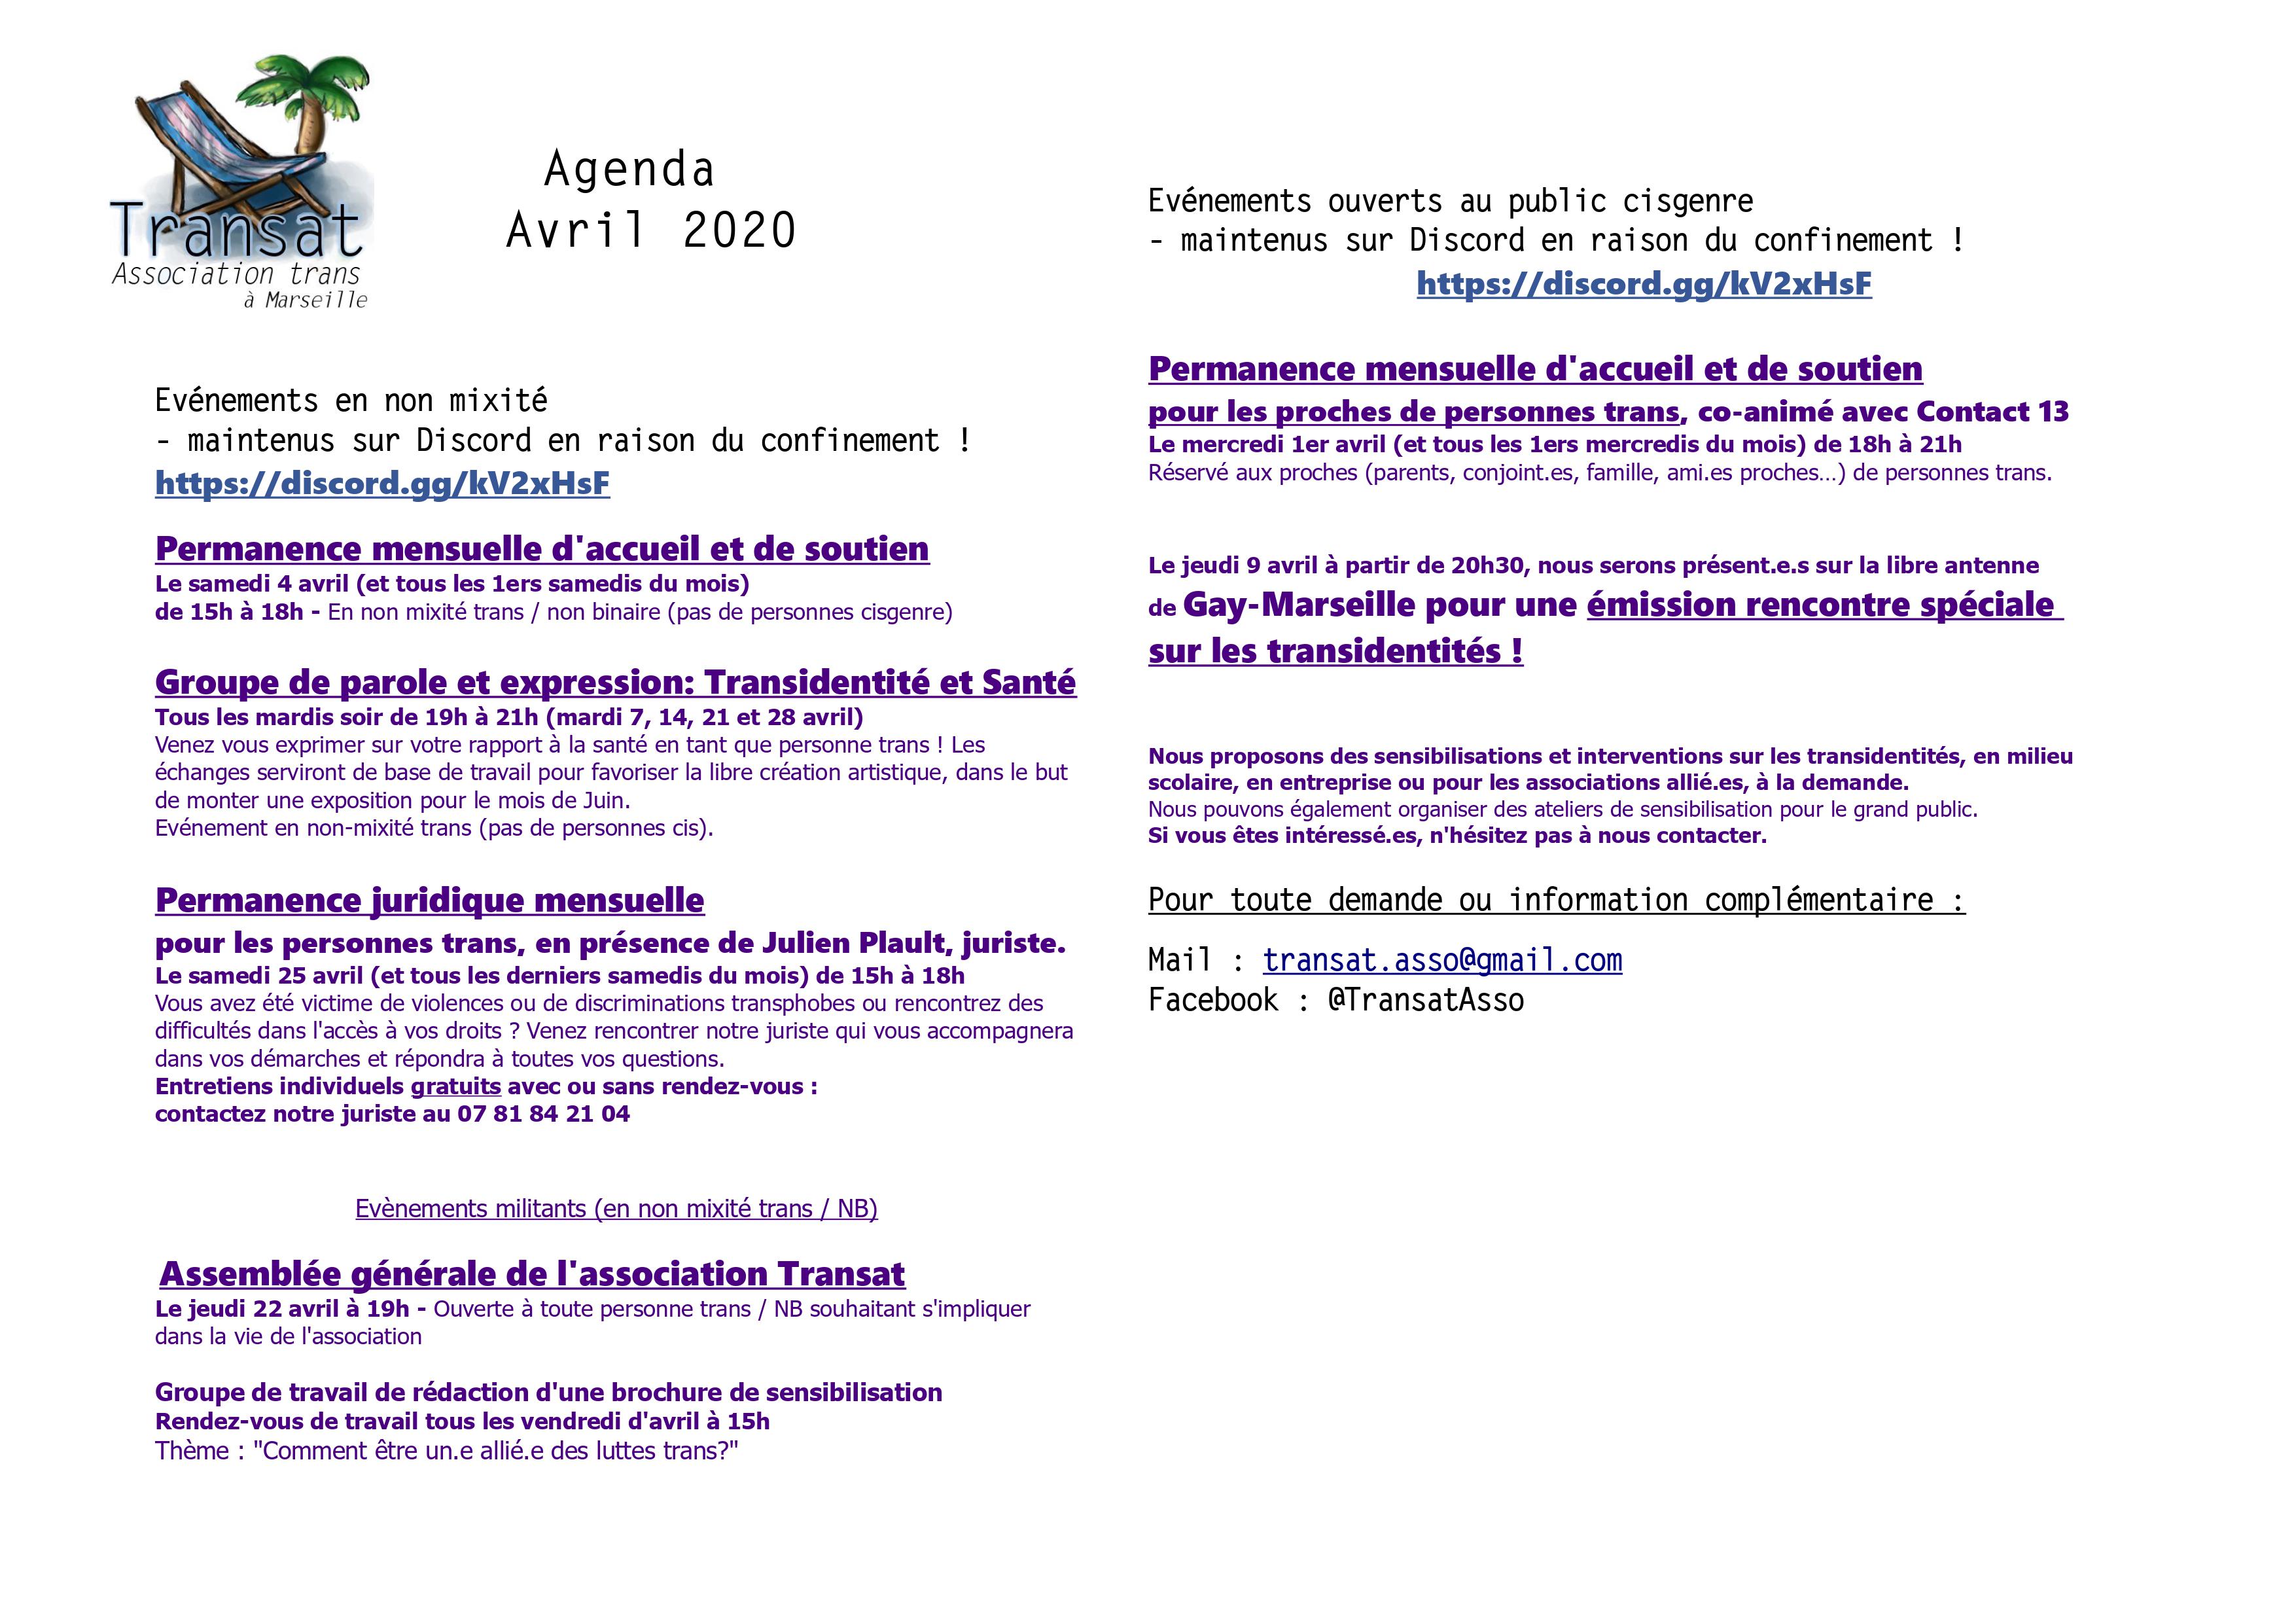 Flyer-Agenda-Avril.jpg